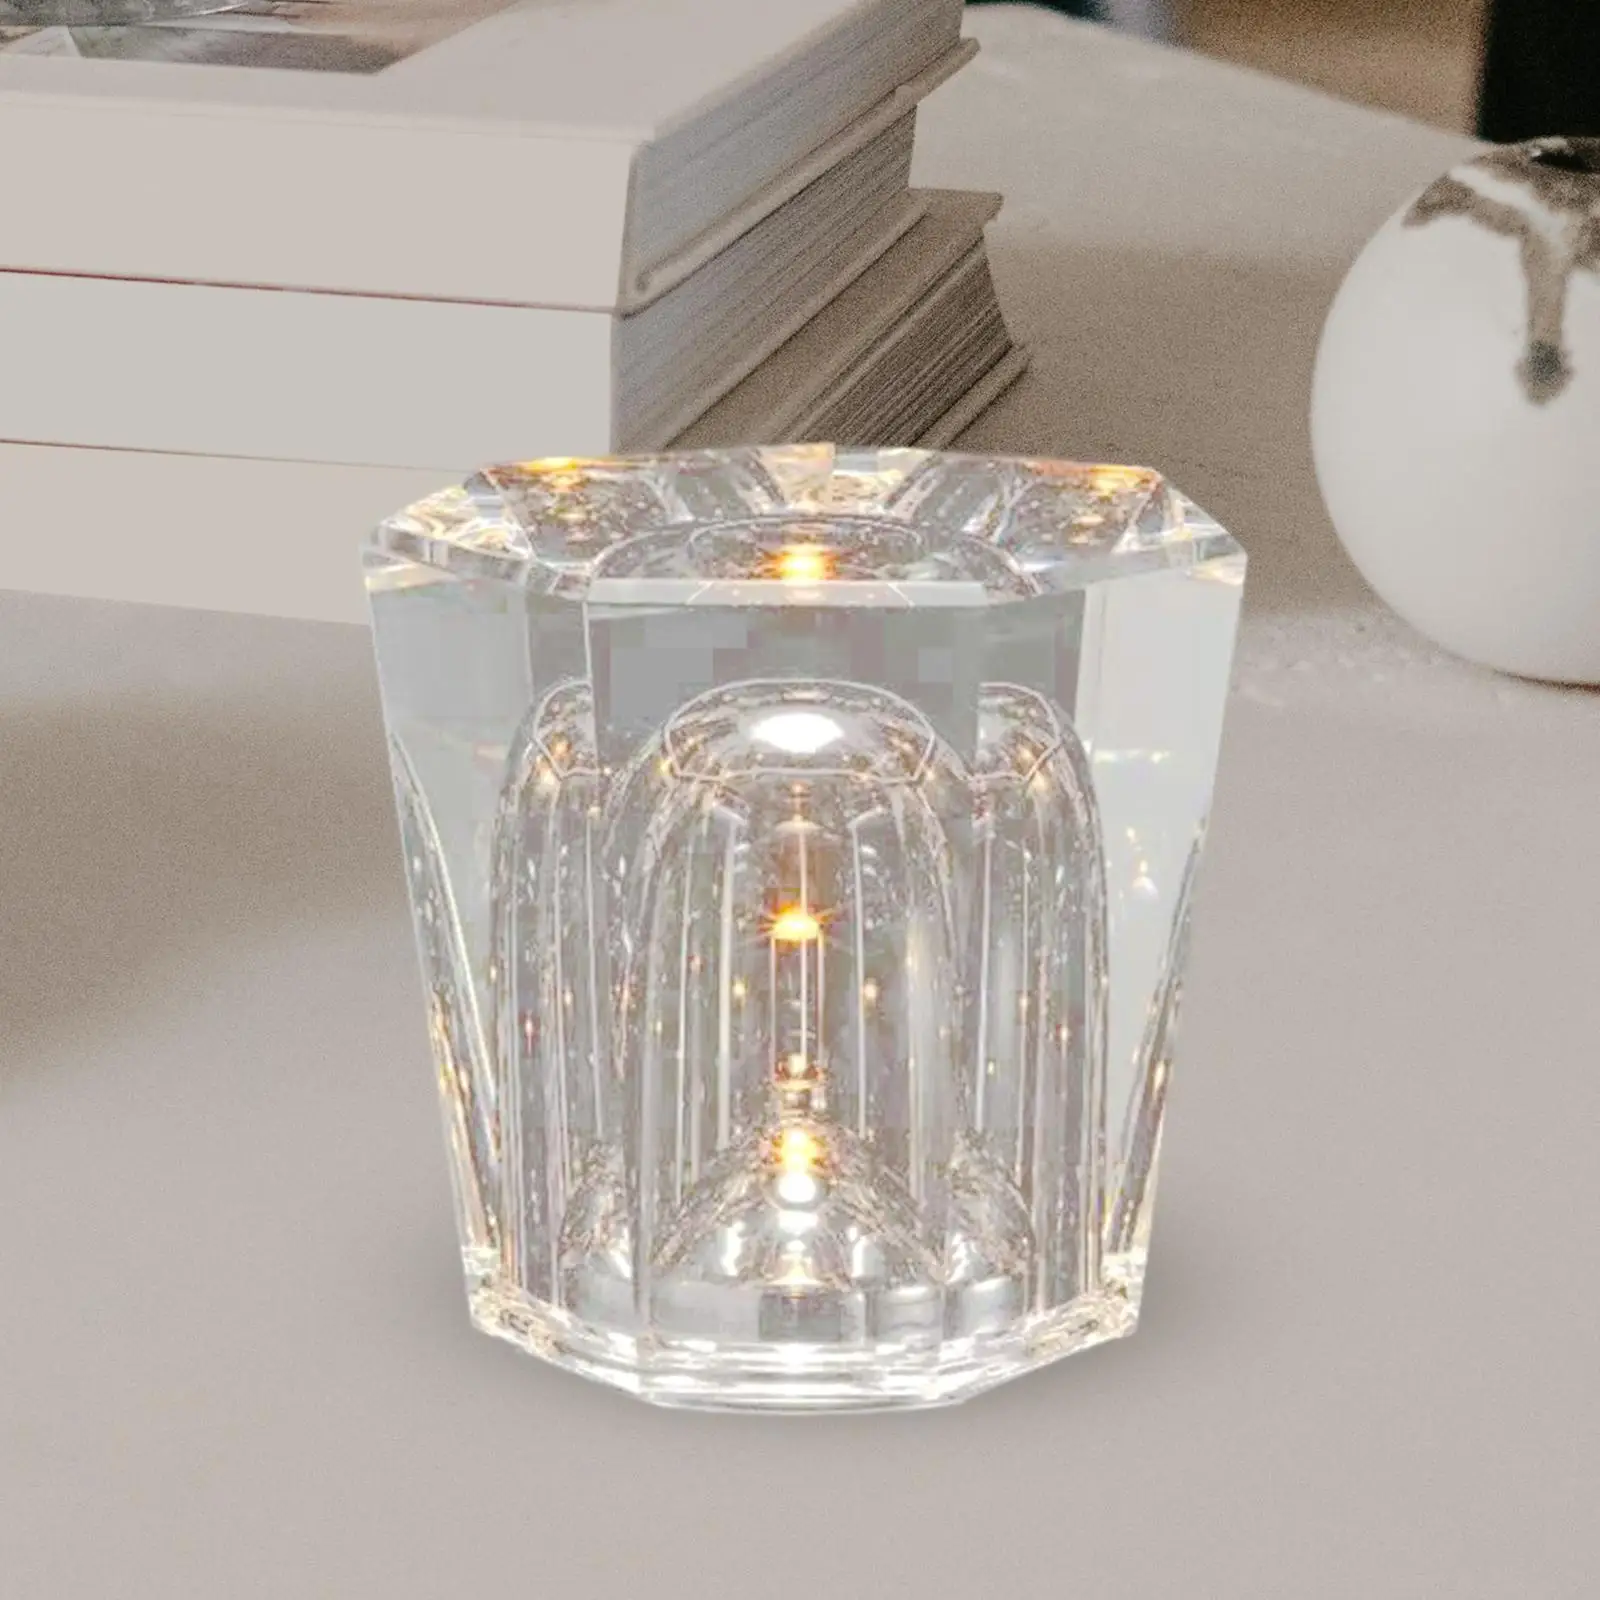 LED Desk Lamp Romantic Desk Lamp Multipurpose Ambient Light Table Lamp for Cabinet Women Men Valentine`s Day Living Room Home